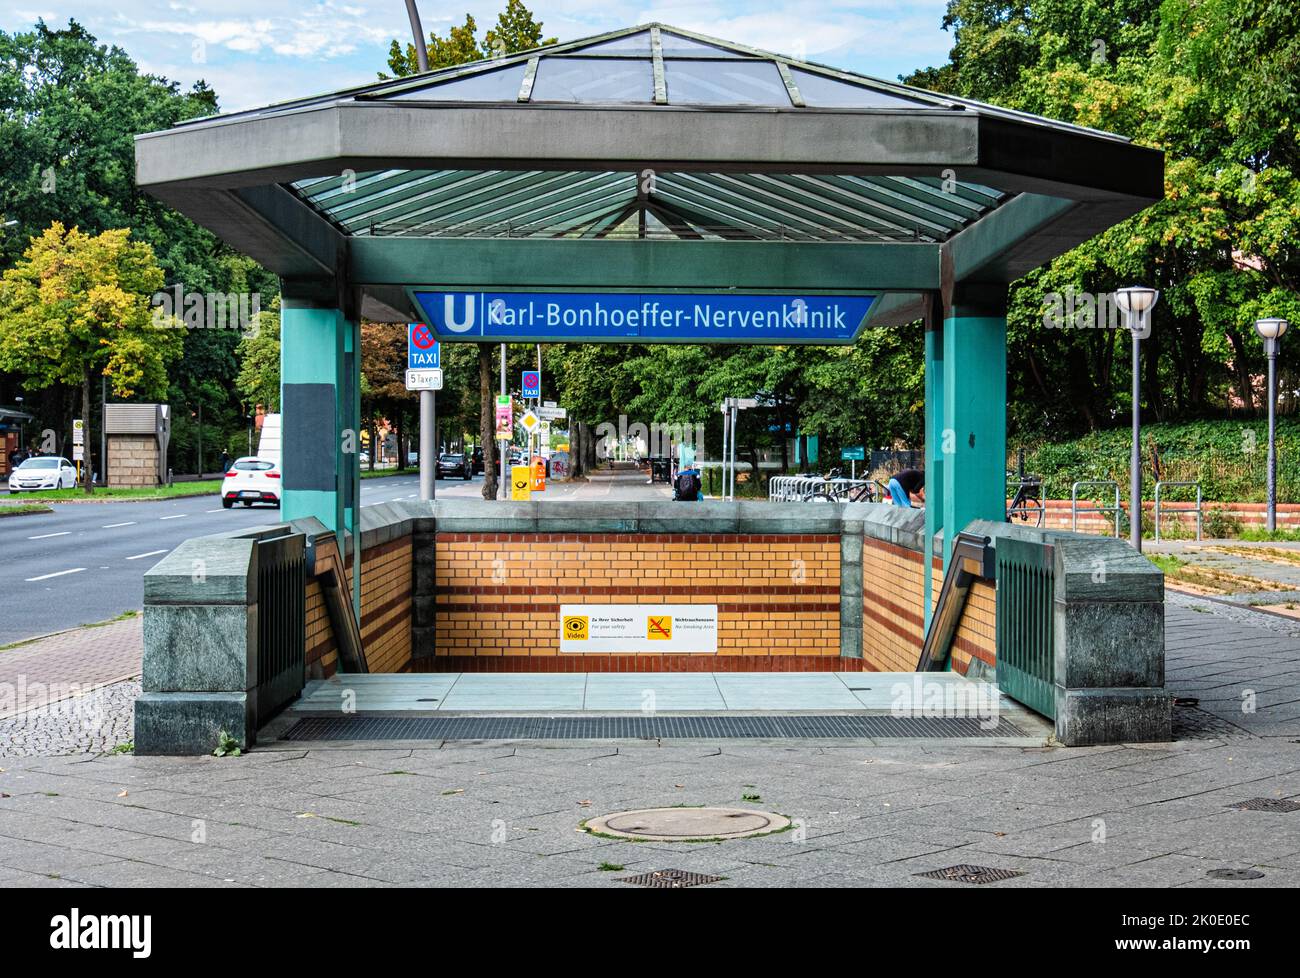 U Karl Bonhoeffer-Nervenklinik underground railway station entrance, Oranienburger Str., Reinickendorf-Berlin Stock Photo